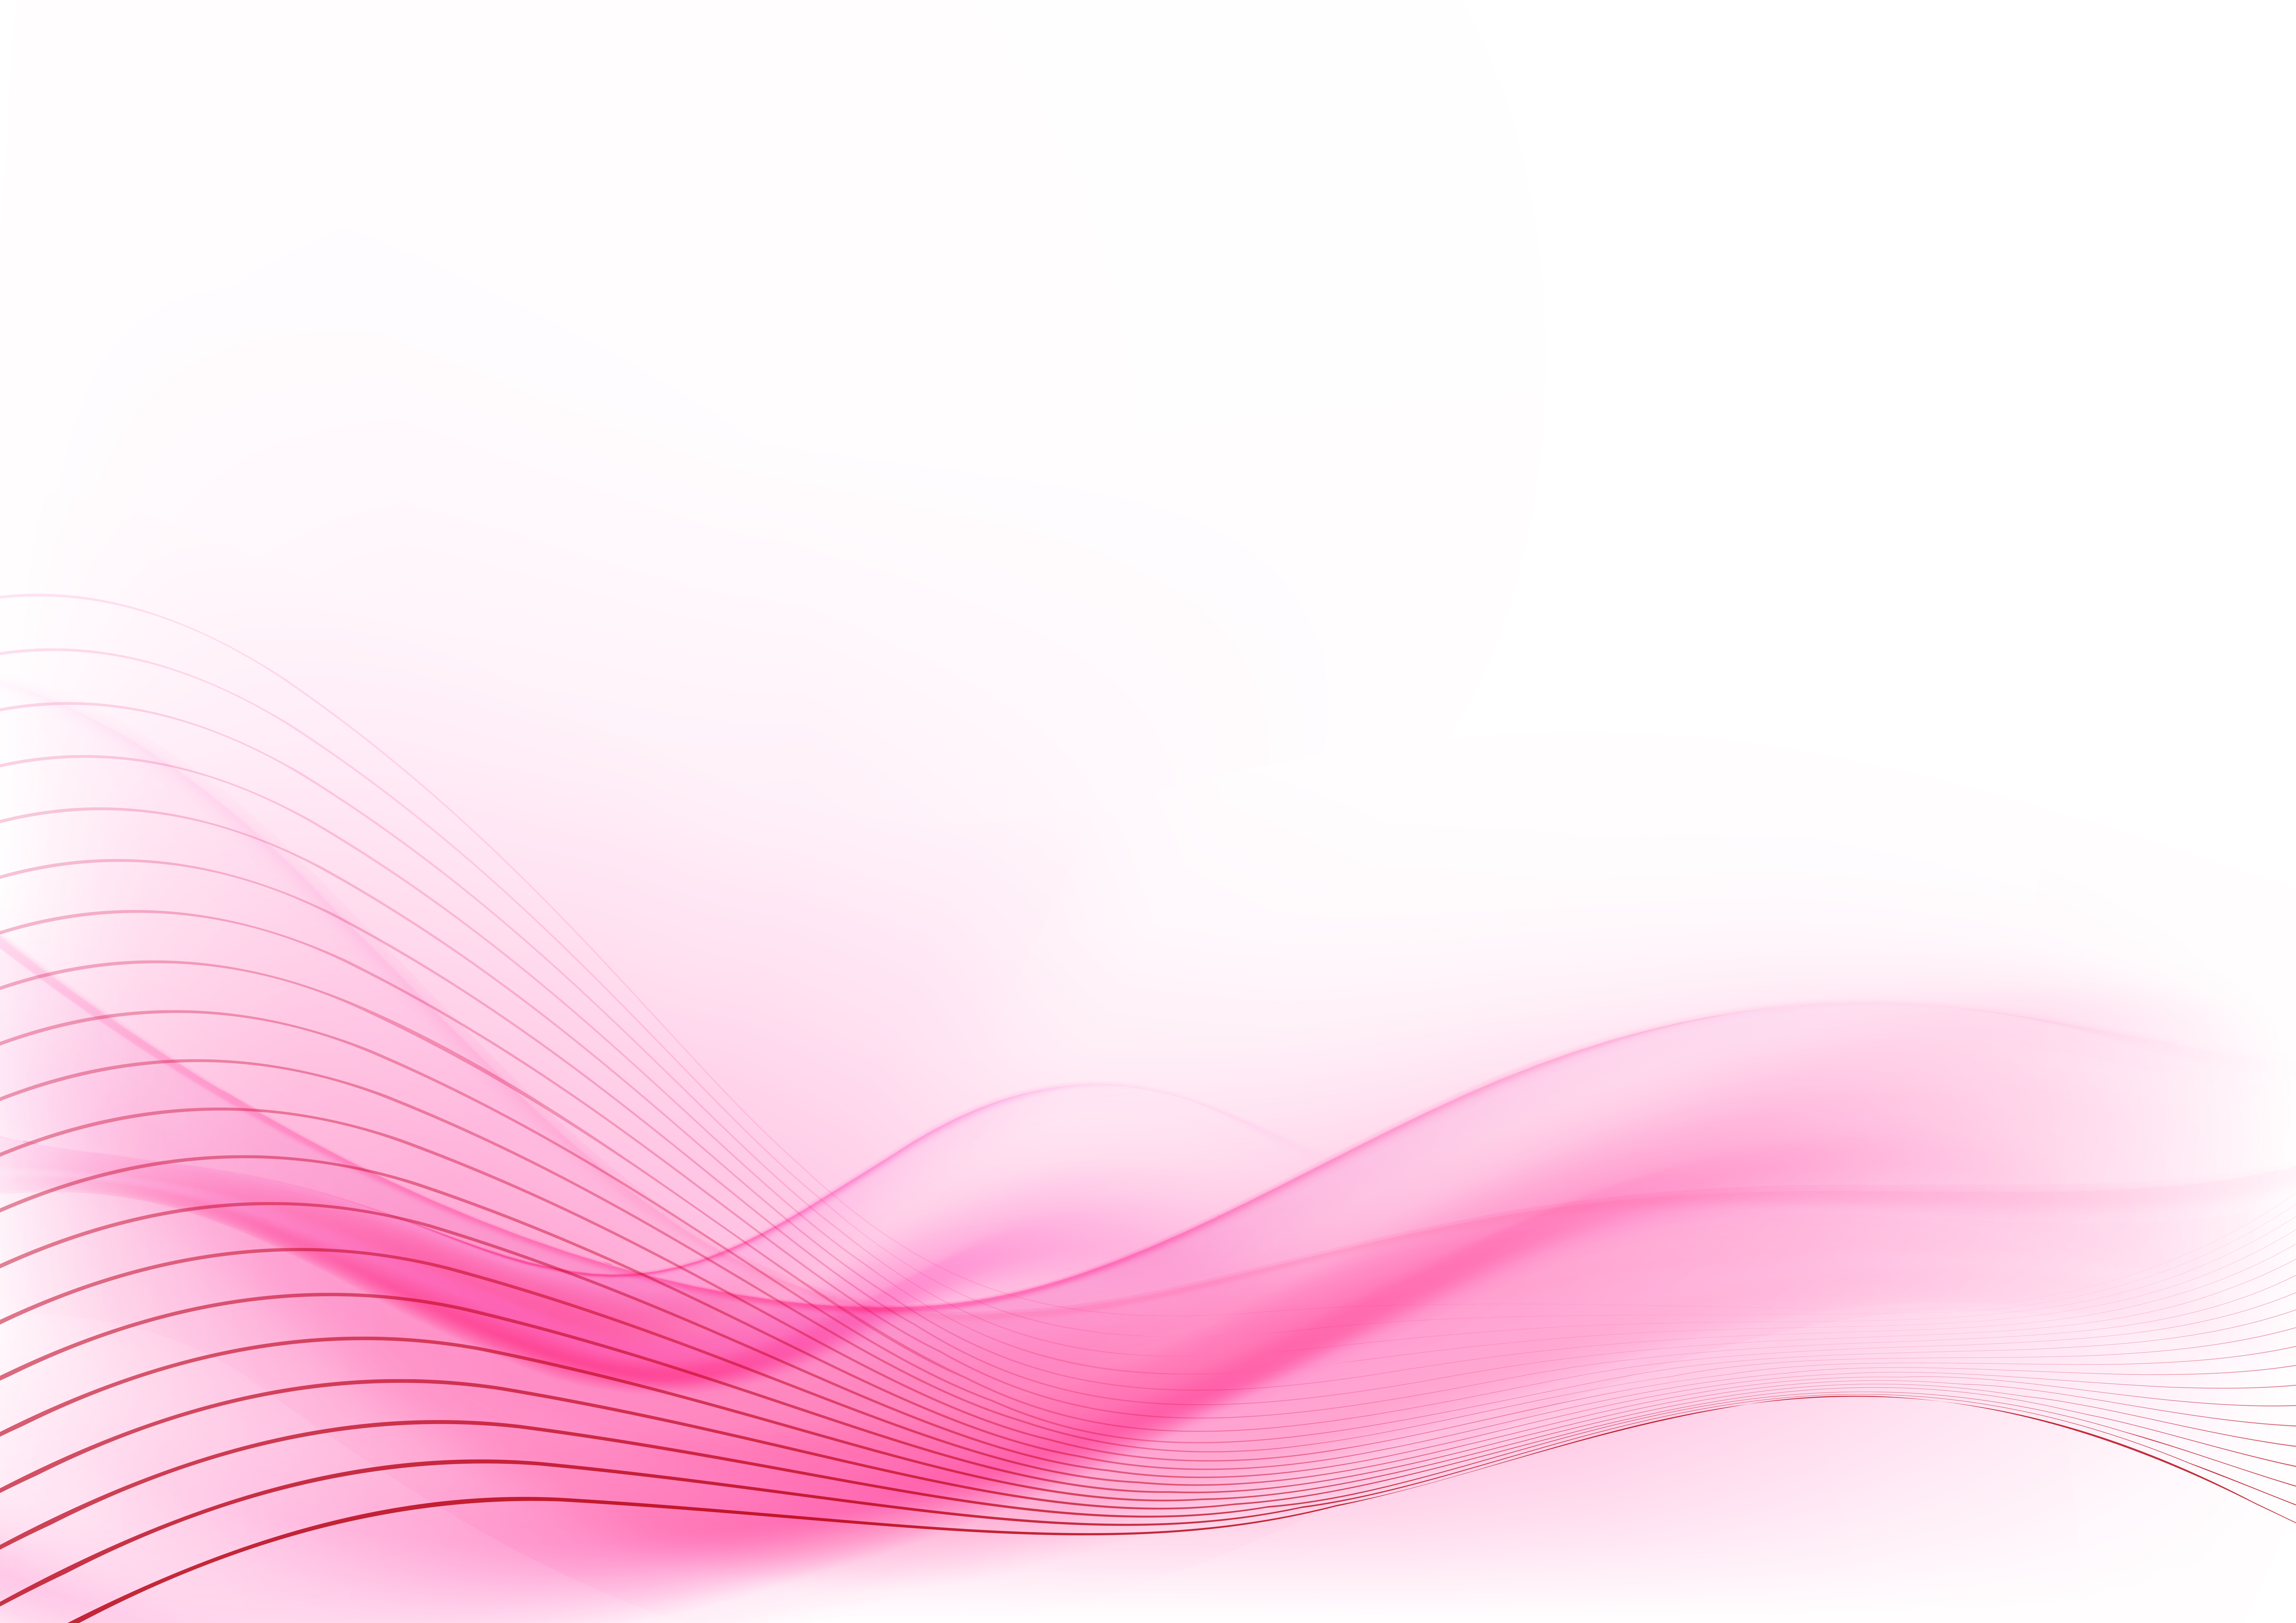 Nền hồng trơn (Solid pink background) - Màu hồng là biểu tượng của sự ngọt ngào, nữ tính và thông minh. Với nền hồng trơn này, bạn sẽ nhận được tất cả những gì màu hồng đại diện. Hãy để màn hình của bạn trở nên ấm áp và tươi sáng hơn với gam màu đậm đà này. Nhấn vào hình ảnh để khám phá những cảnh đẹp và phù hợp với màu sắc hồng.